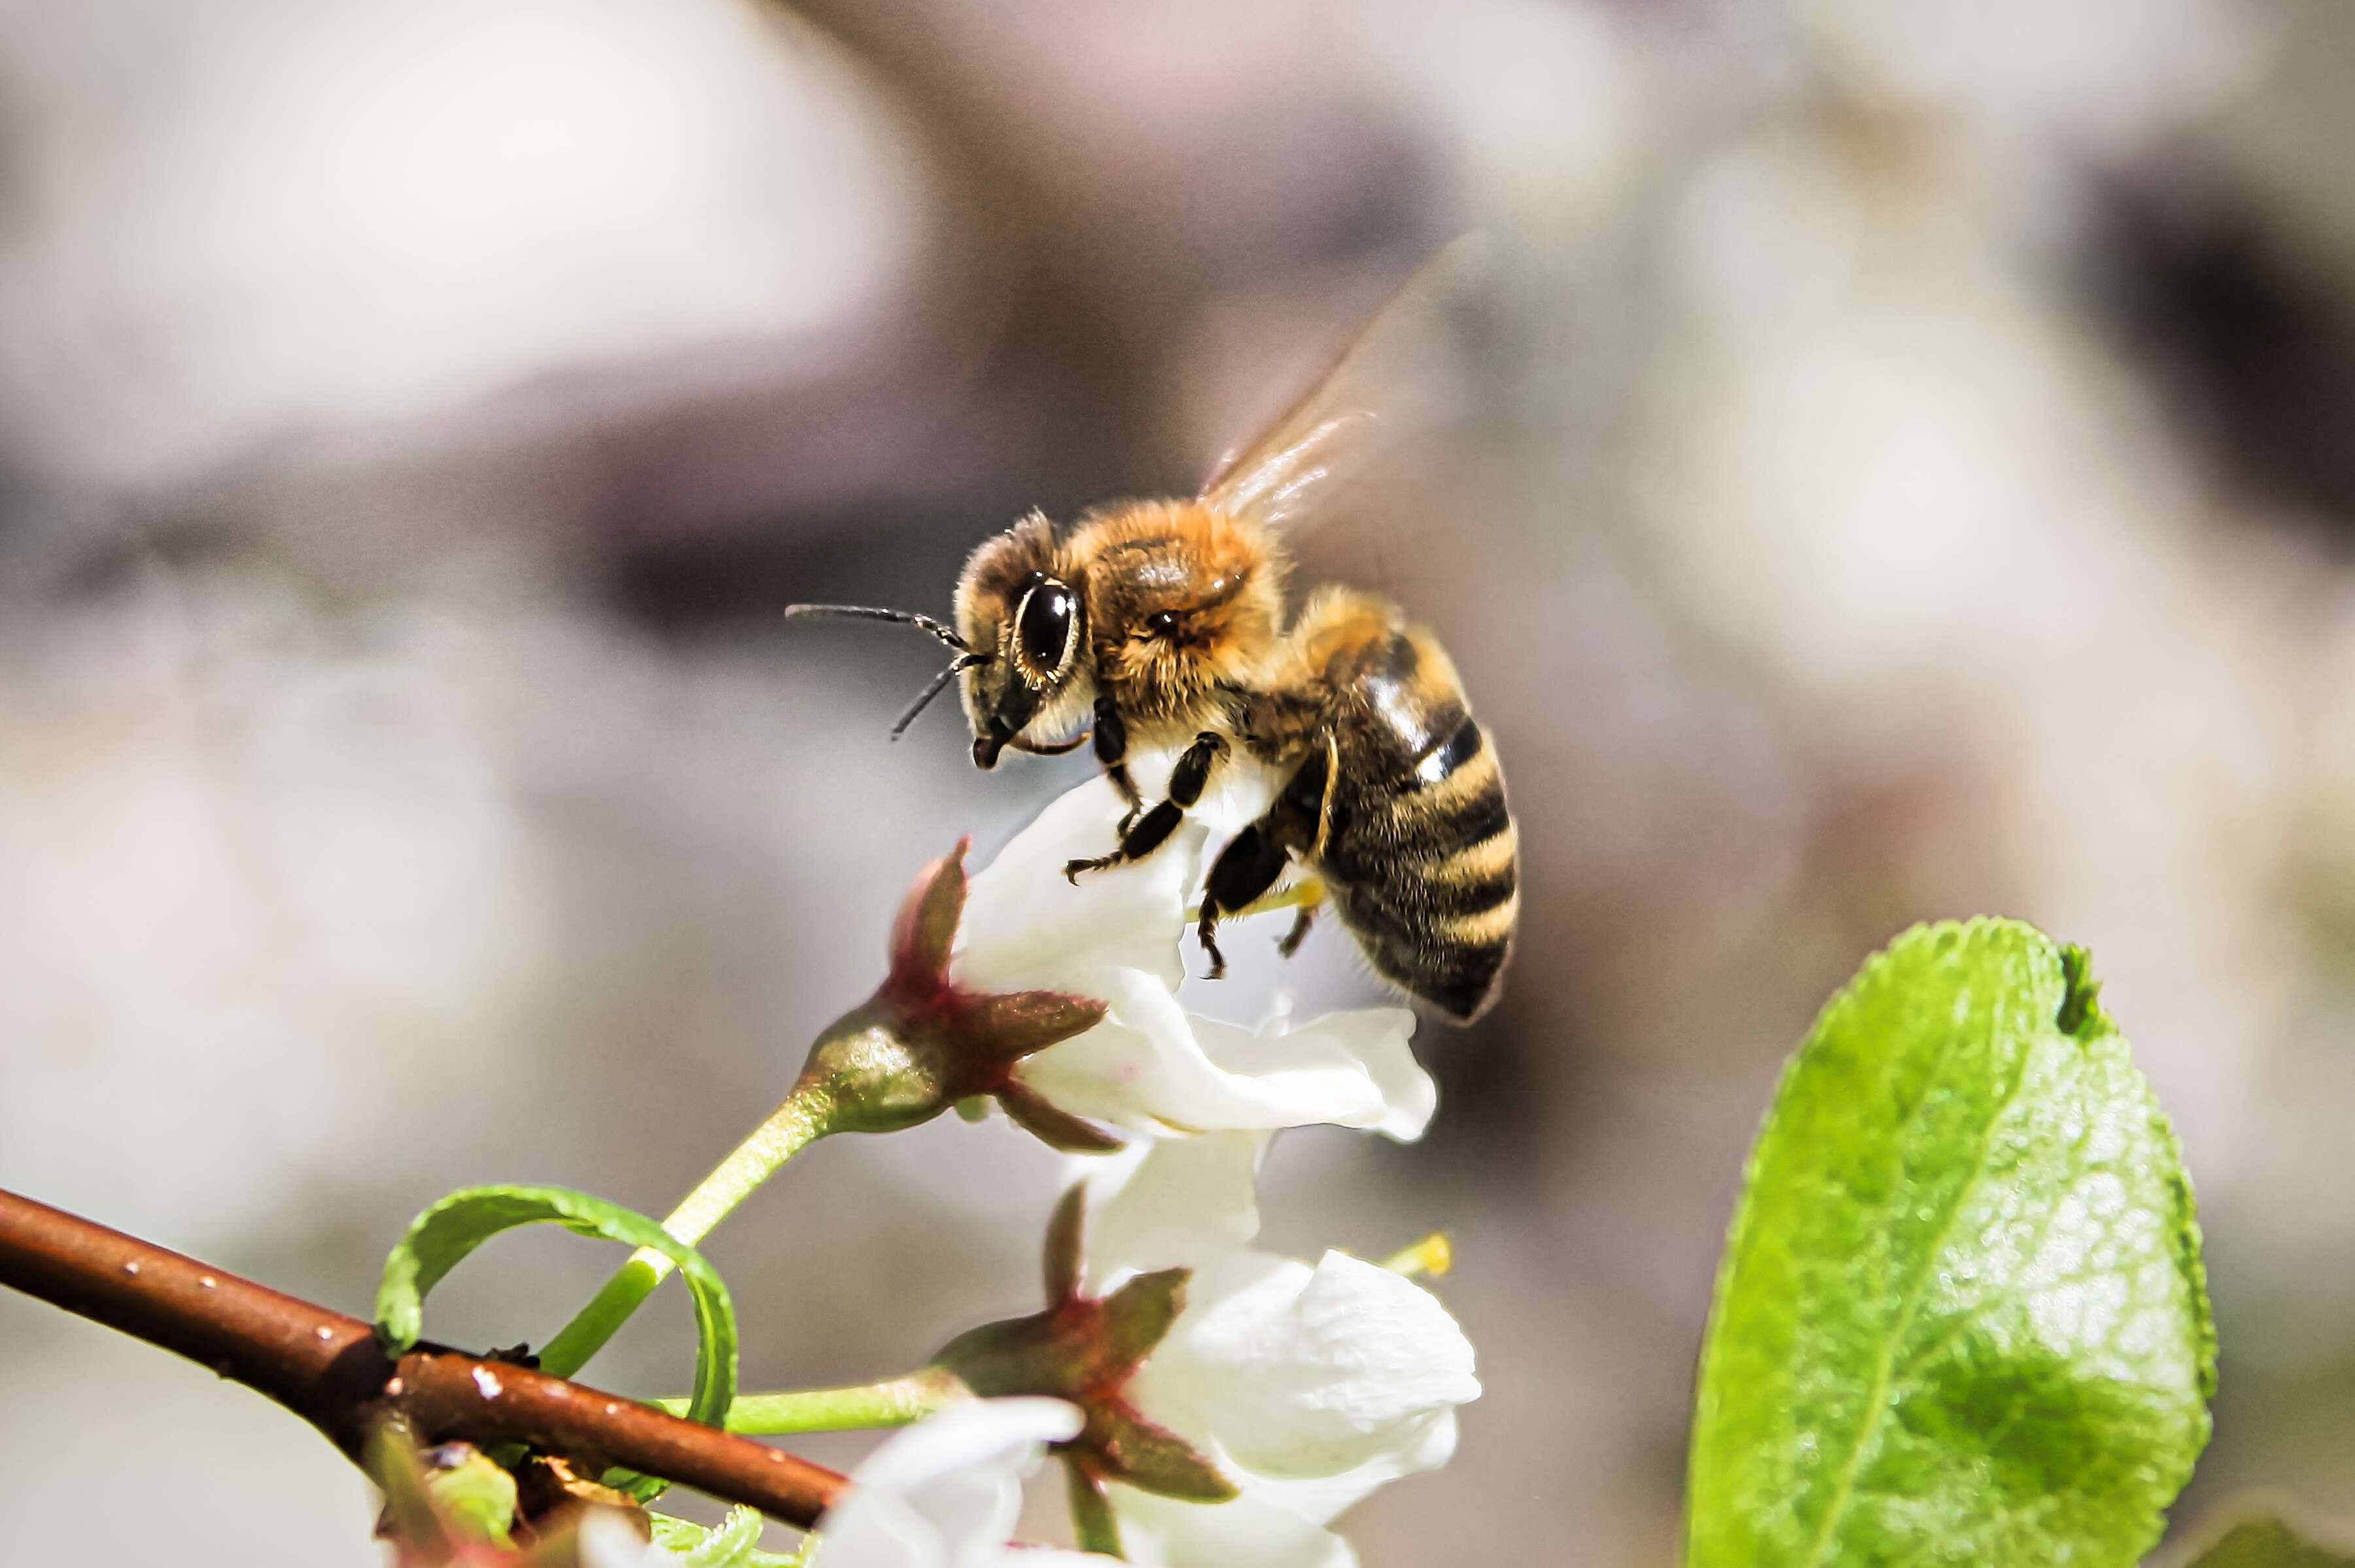 A honeybee pollenating a flower